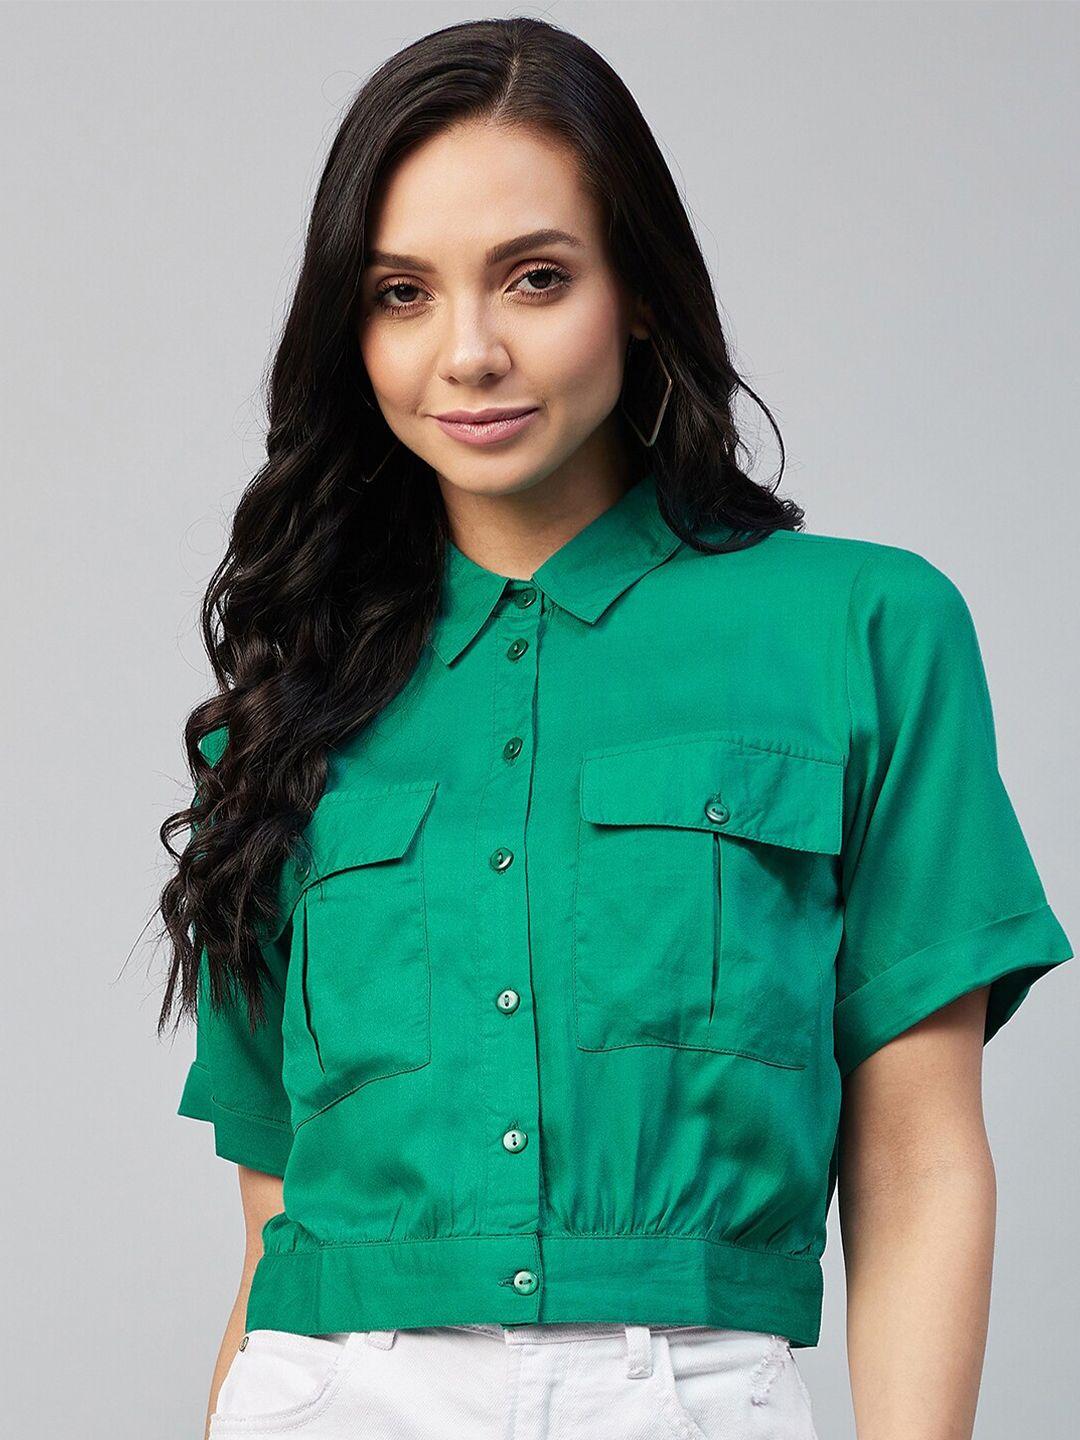 carlton london women green classic opaque casual shirt